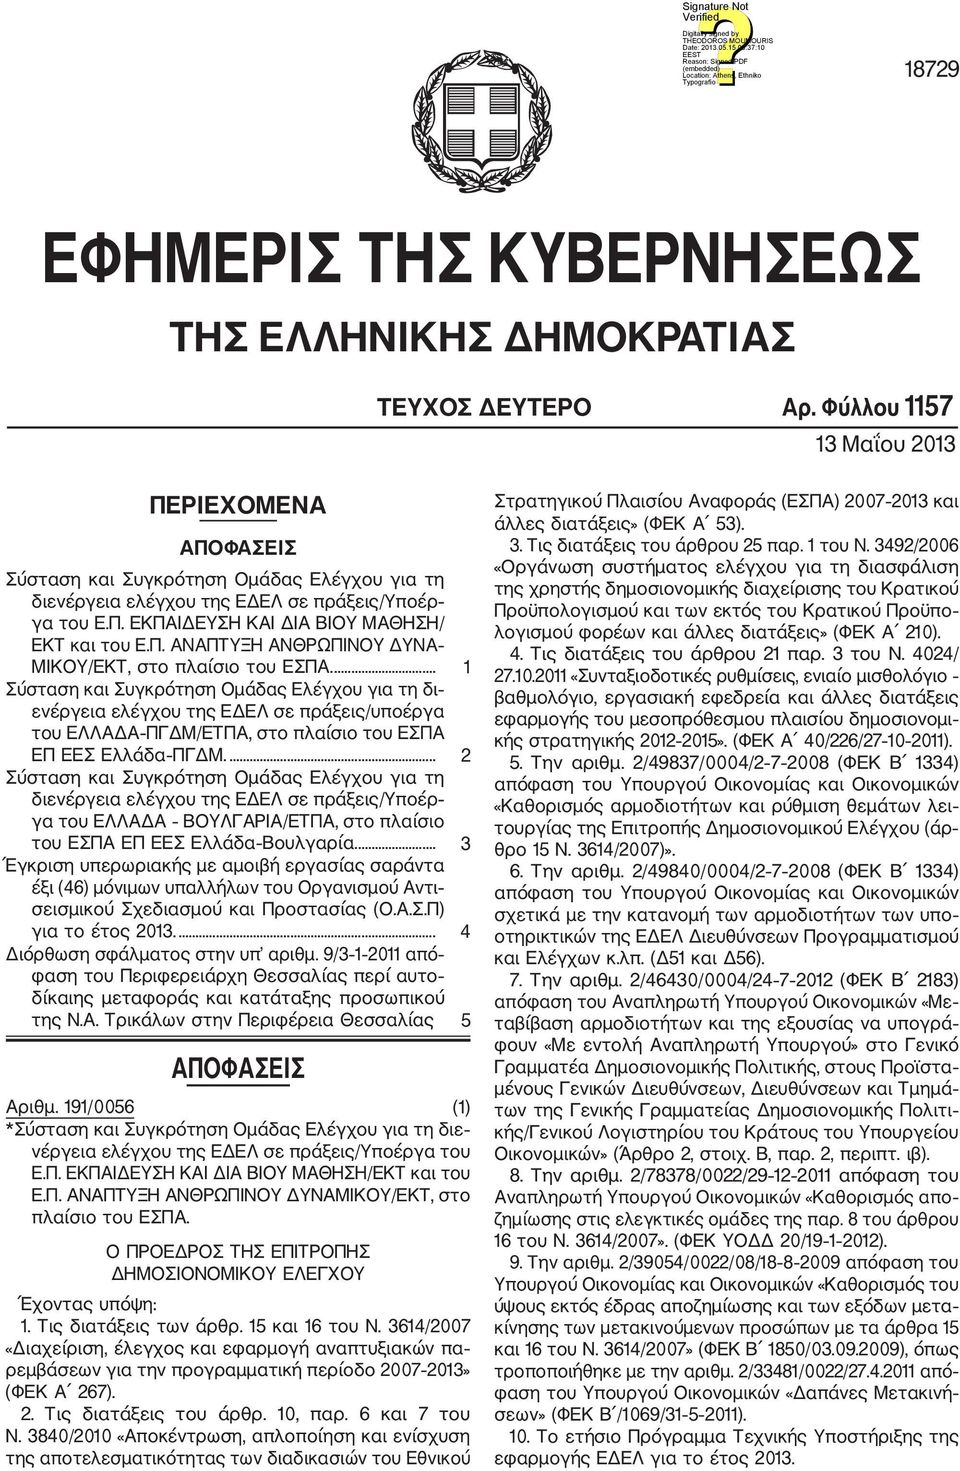 ... 1 Σύσταση και Συγκρότηση Ομάδας Ελέγχου για τη δι ενέργεια ελέγχου της ΕΔΕΛ σε πράξεις/υποέργα του ΕΛΛΑΔΑ ΠΓΔΜ/ΕΤΠΑ, στο πλαίσιο του ΕΣΠΑ ΕΠ ΕΕΣ Ελλάδα ΠΓΔΜ.